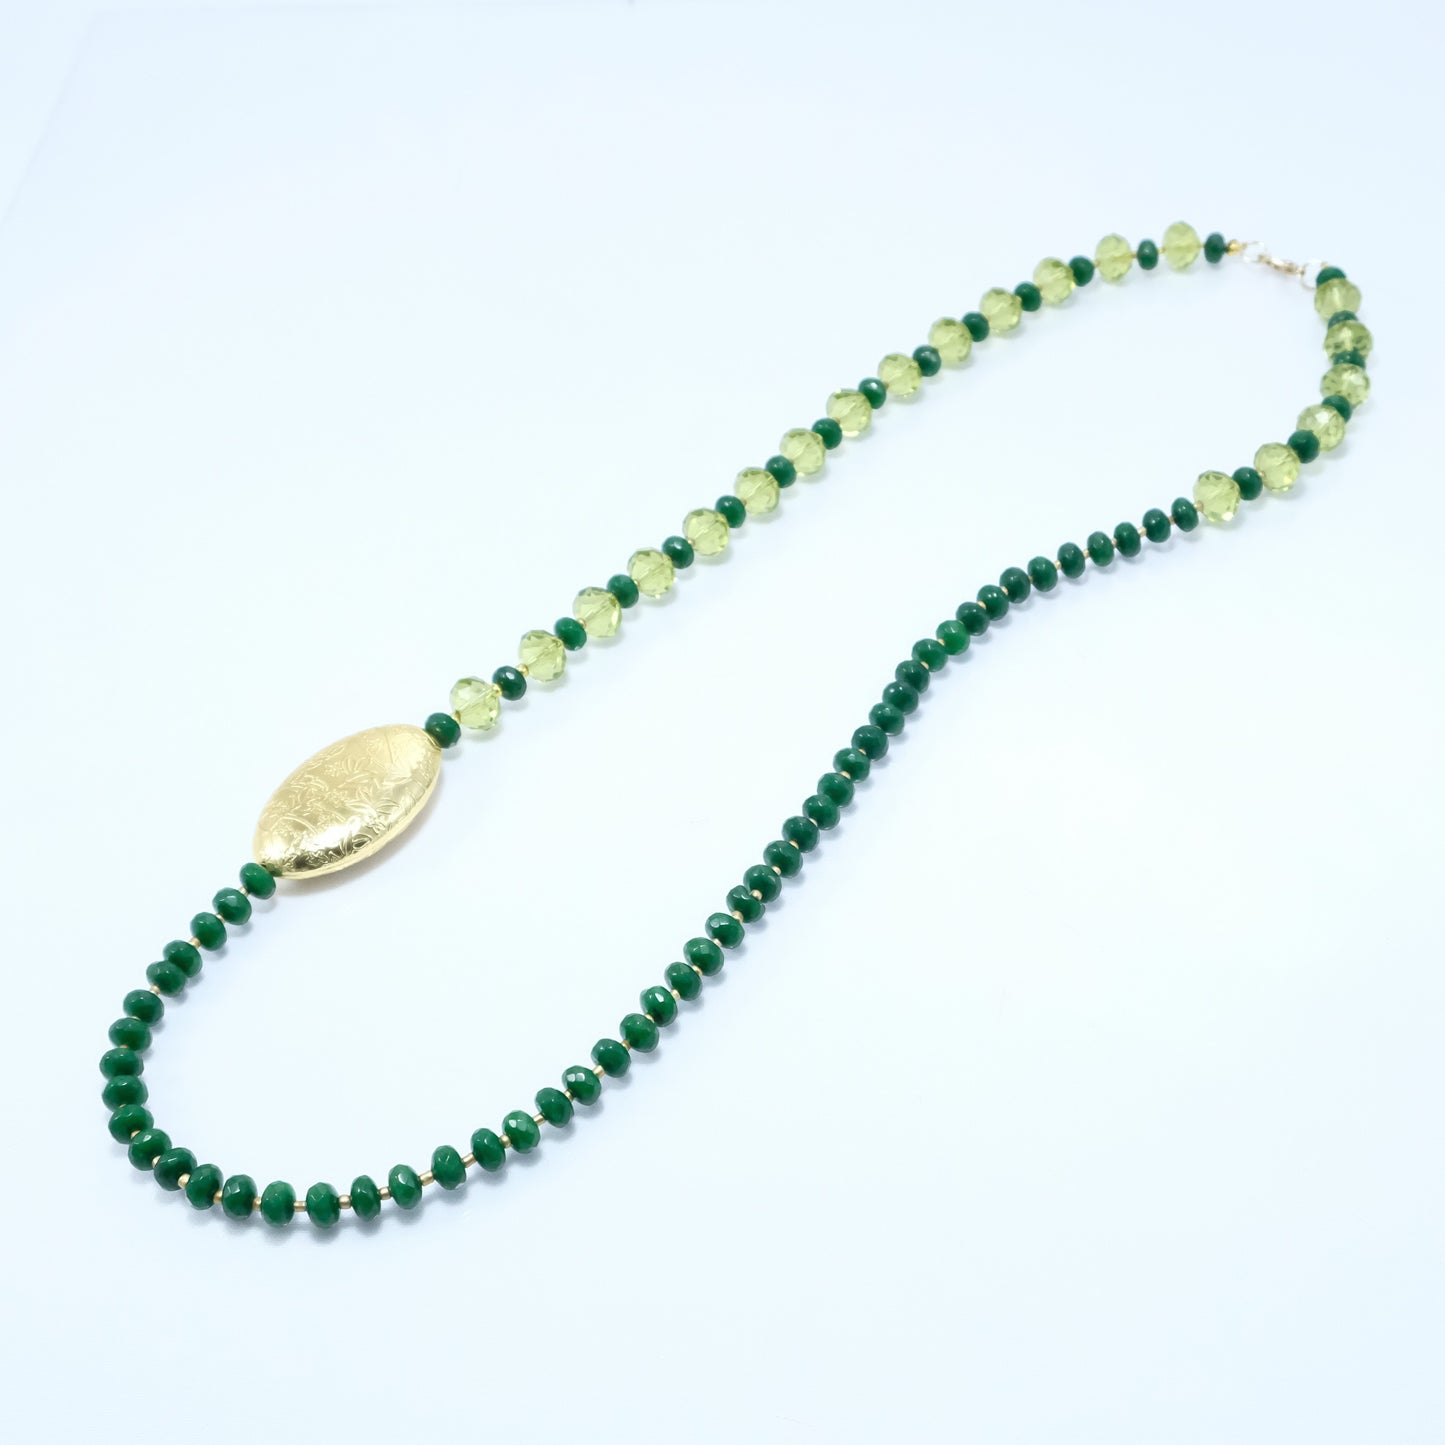 Collana LE PIETRE .066 perle agata verde sfaccettate e  cristalli incastonati giallo limone.